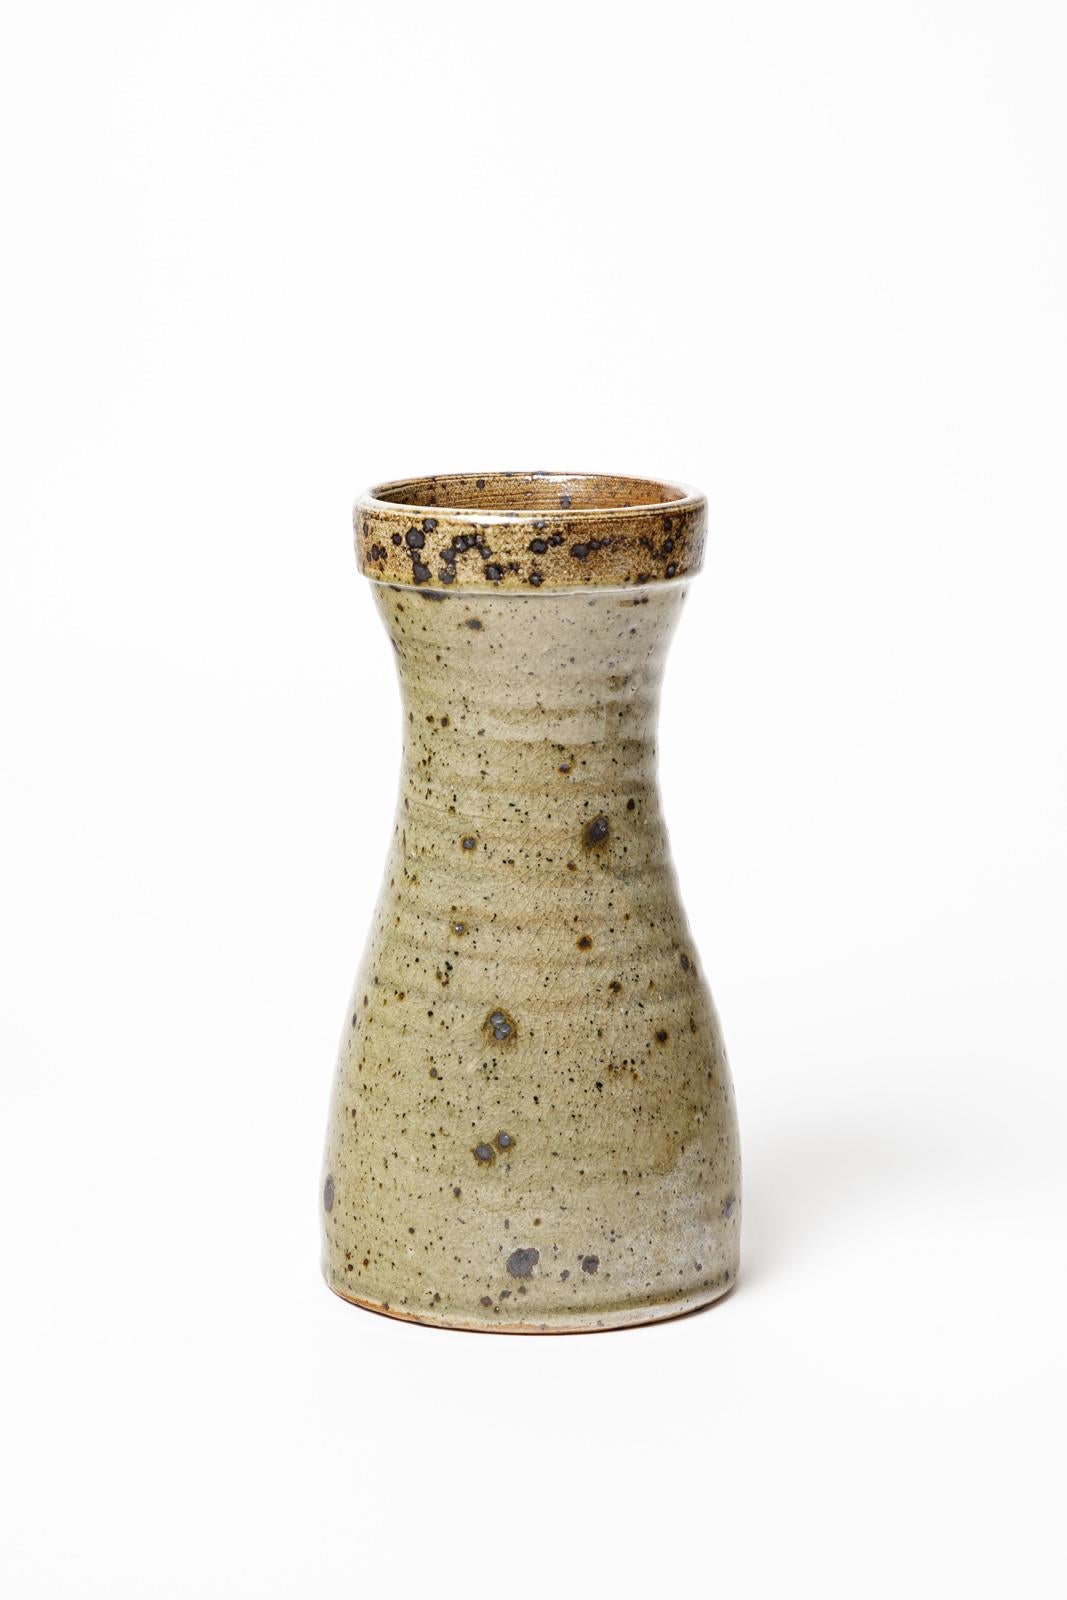 French Gustave Tiffoche 20th Century Stoneware Diabolo Ceramic Vase, circa 1970 For Sale